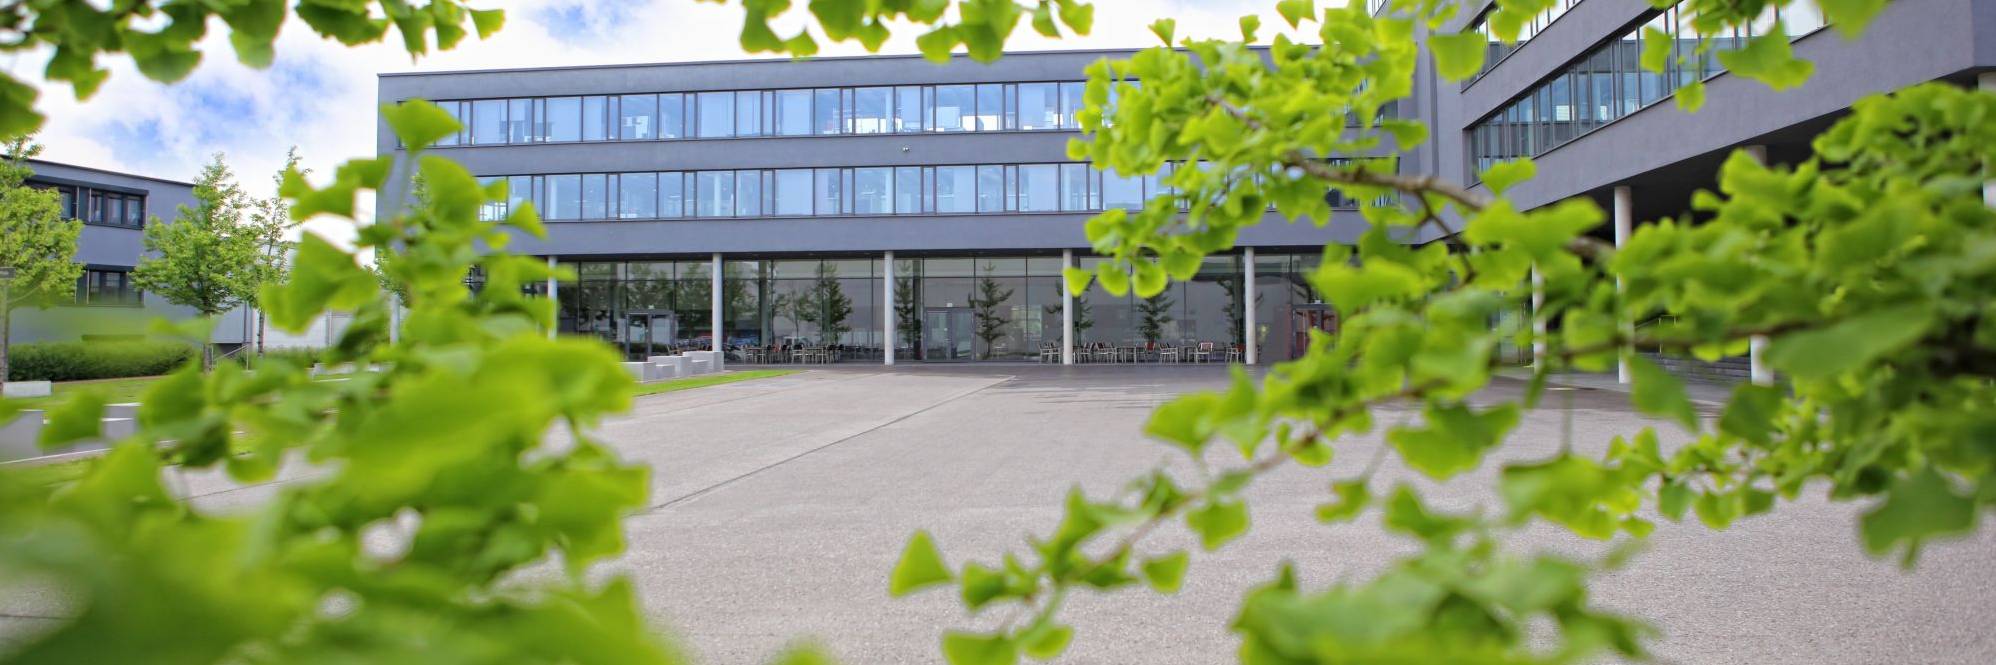 Dürr AG | Headquarter in Bietigheim-Bissingen, Germany